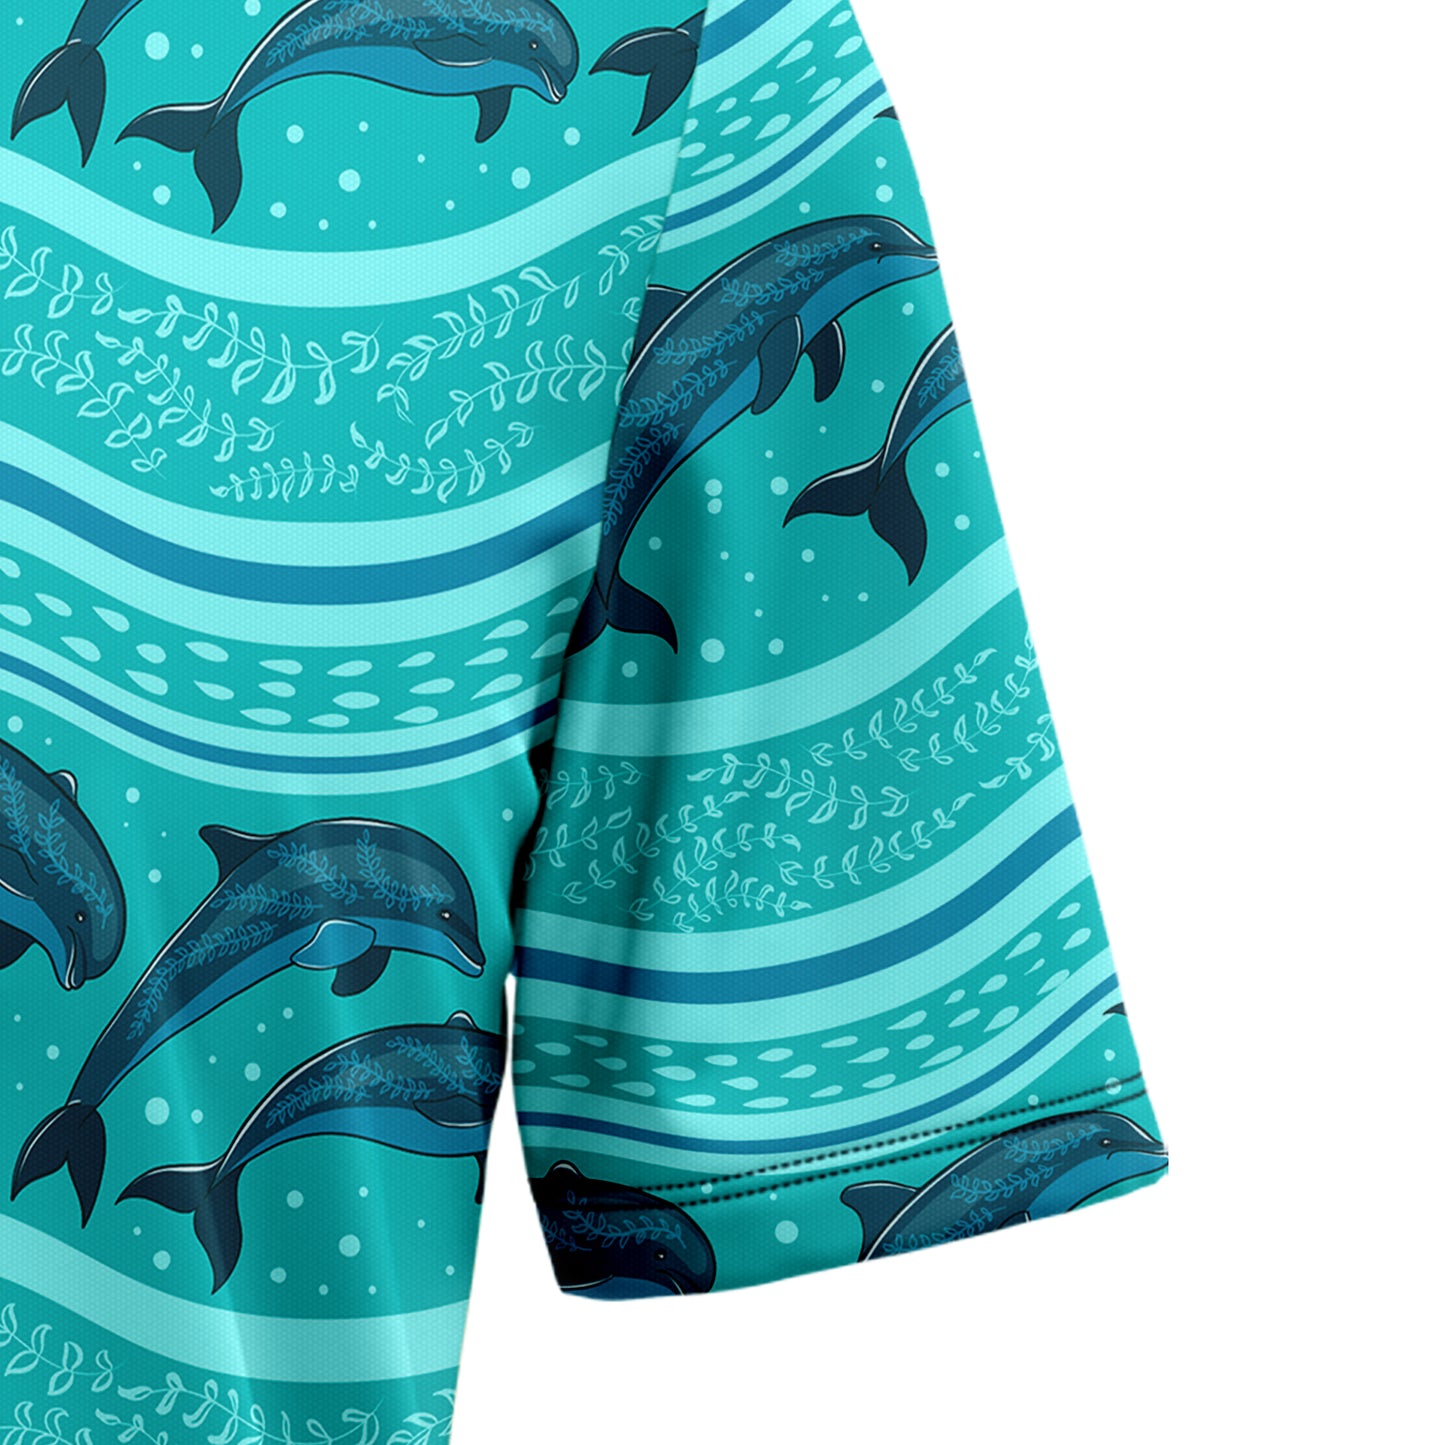 Dolphin Ocean T1307 Hawaiian Shirt